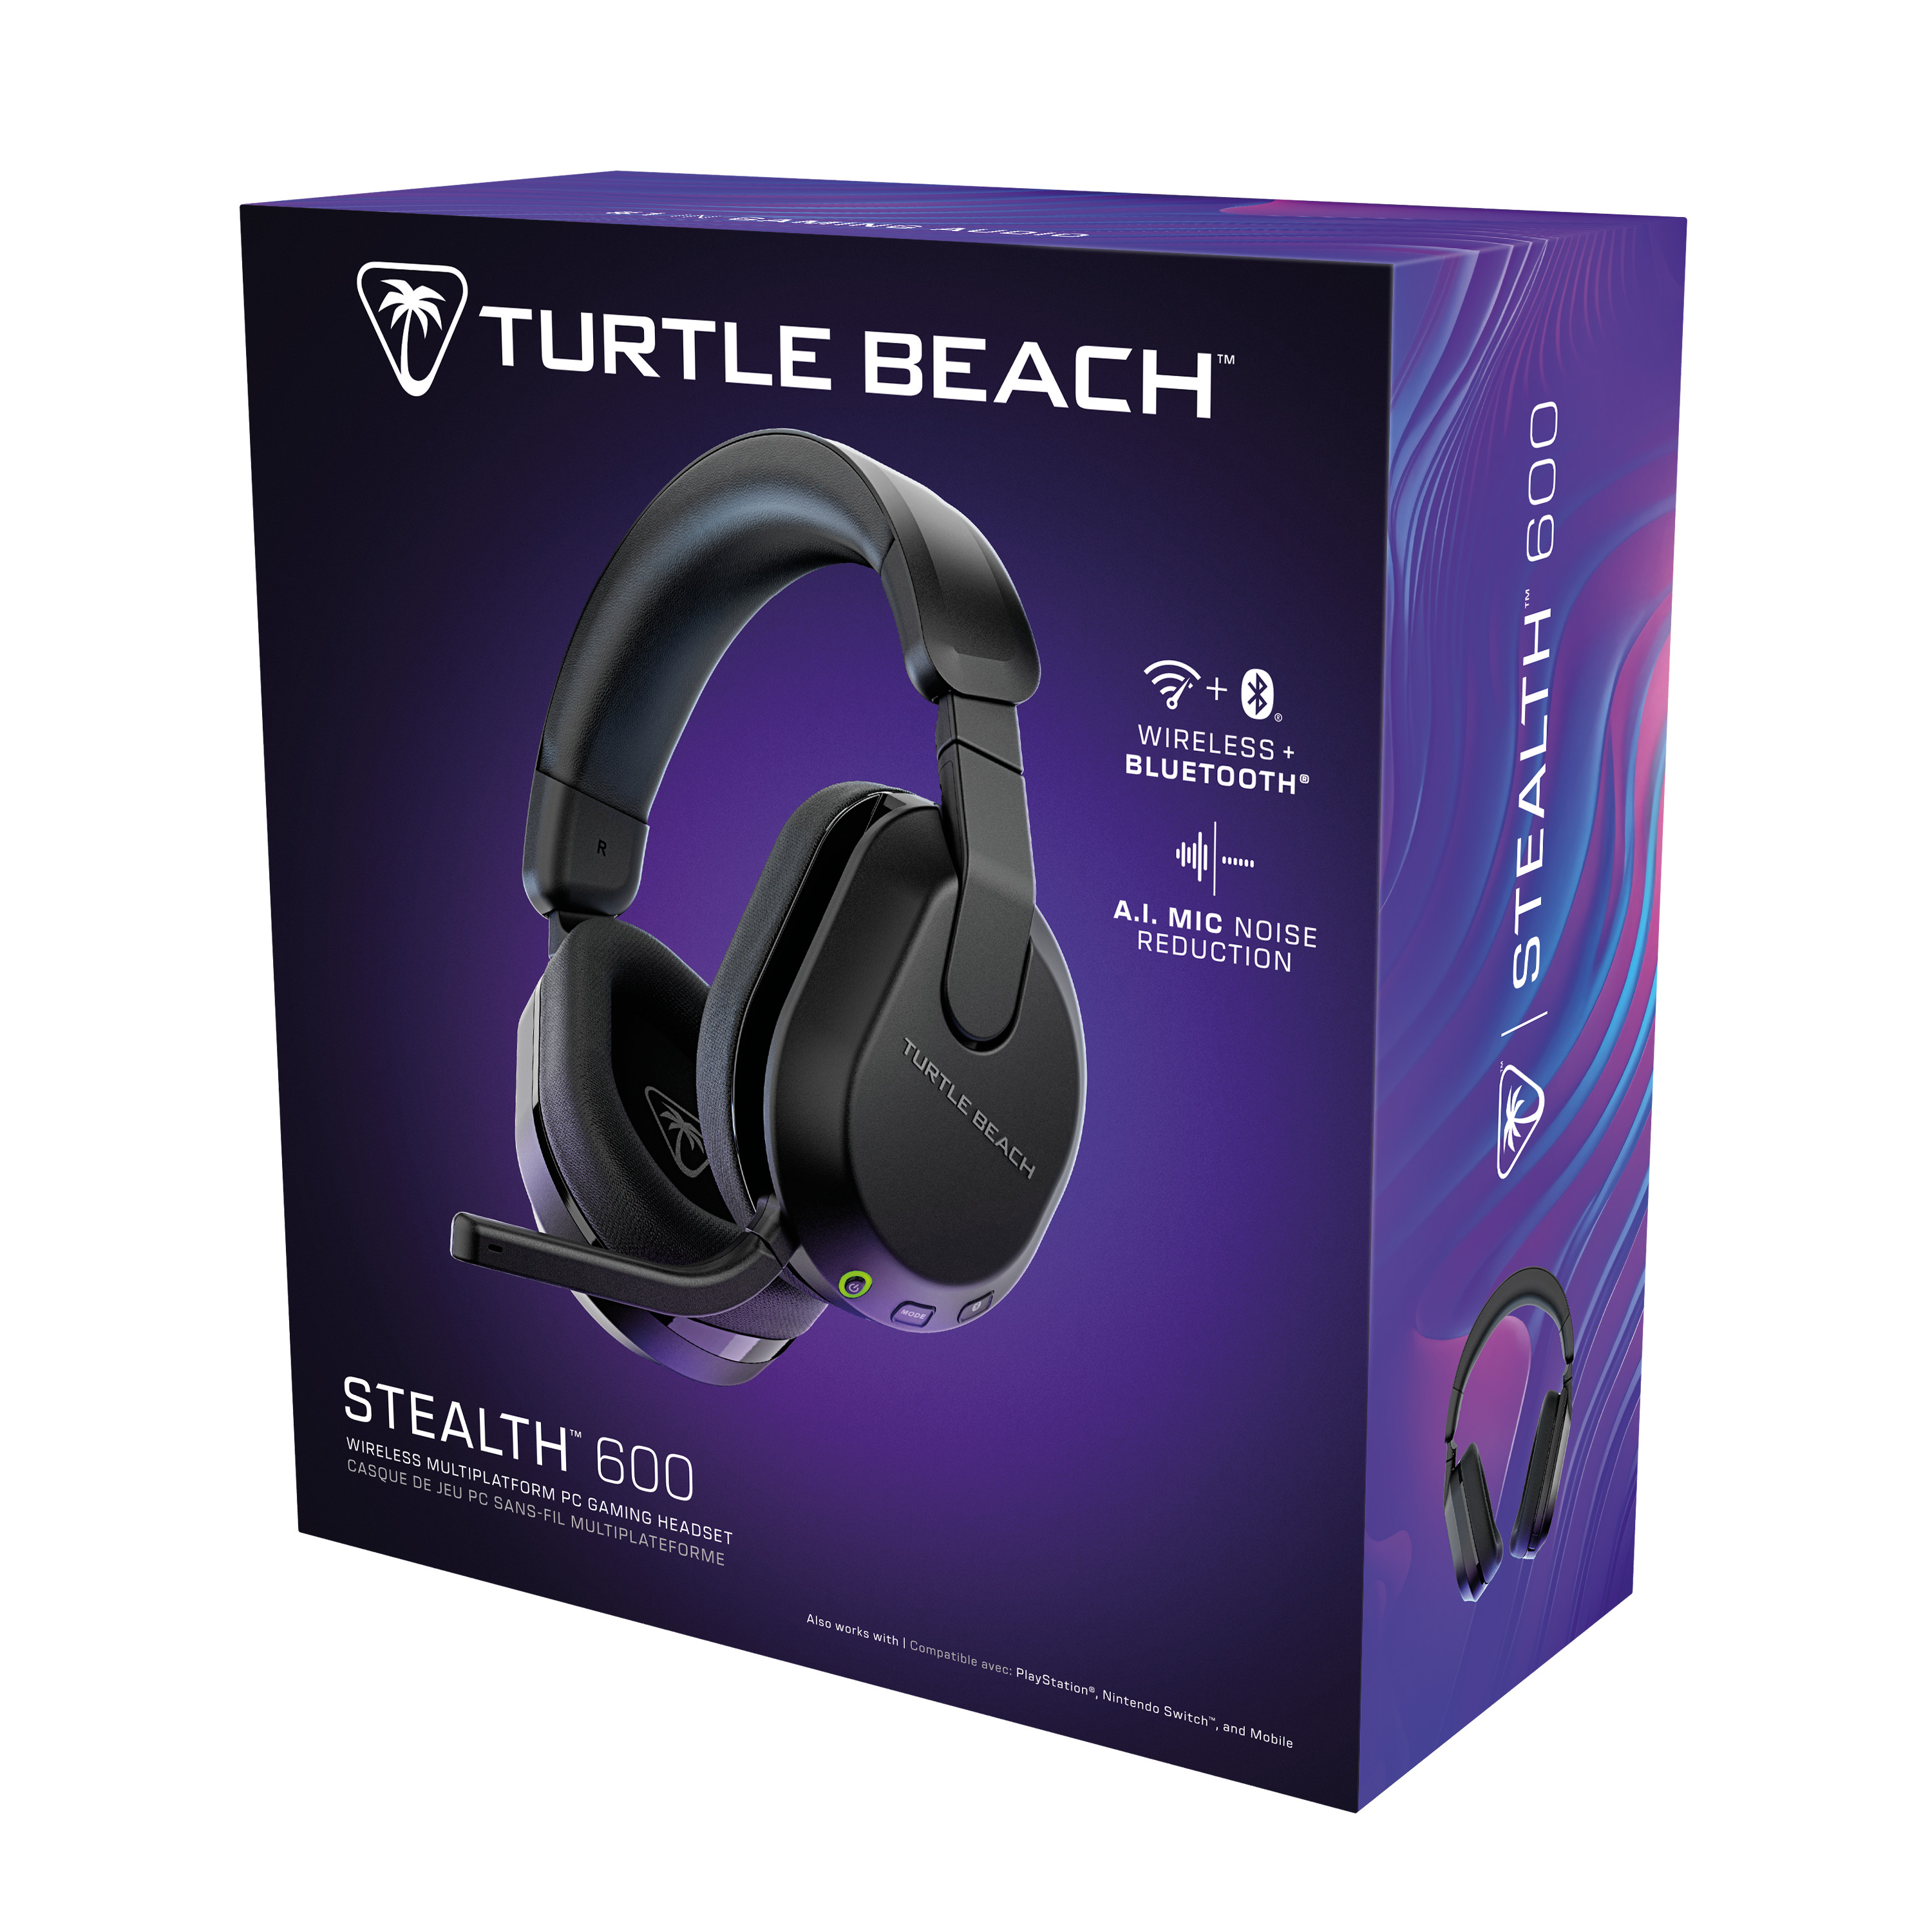 TURTLE BEACH Stealth 600 GEN3, Black TBS-5103-05 Wireless Headset for PC